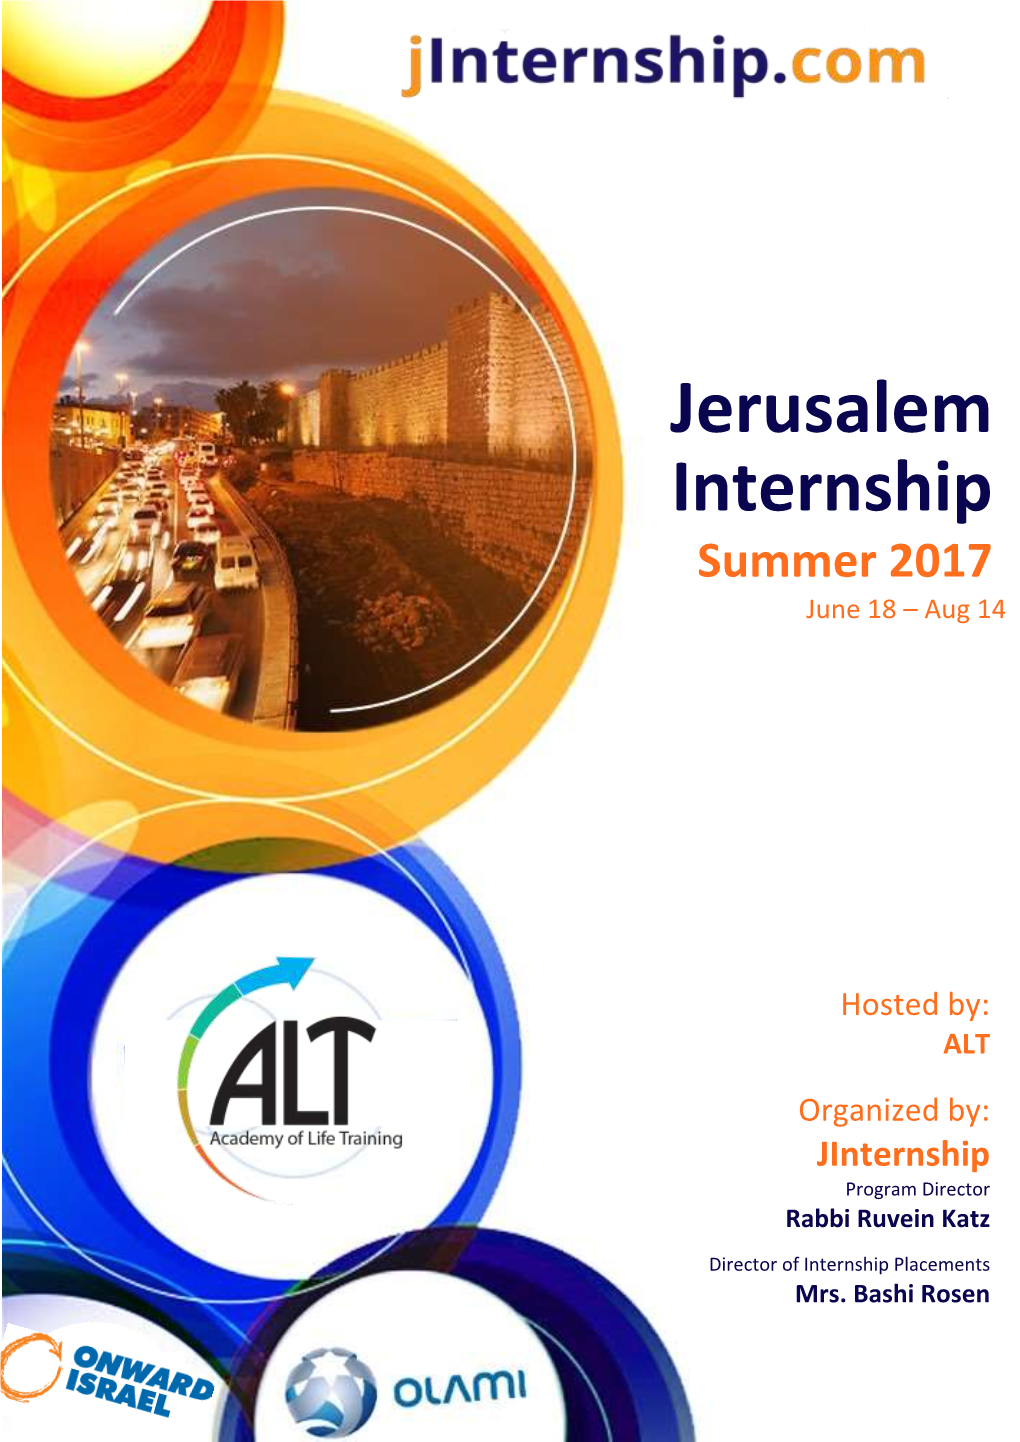 Jerusalem Internship Summer 2017 June 18 – Aug 14